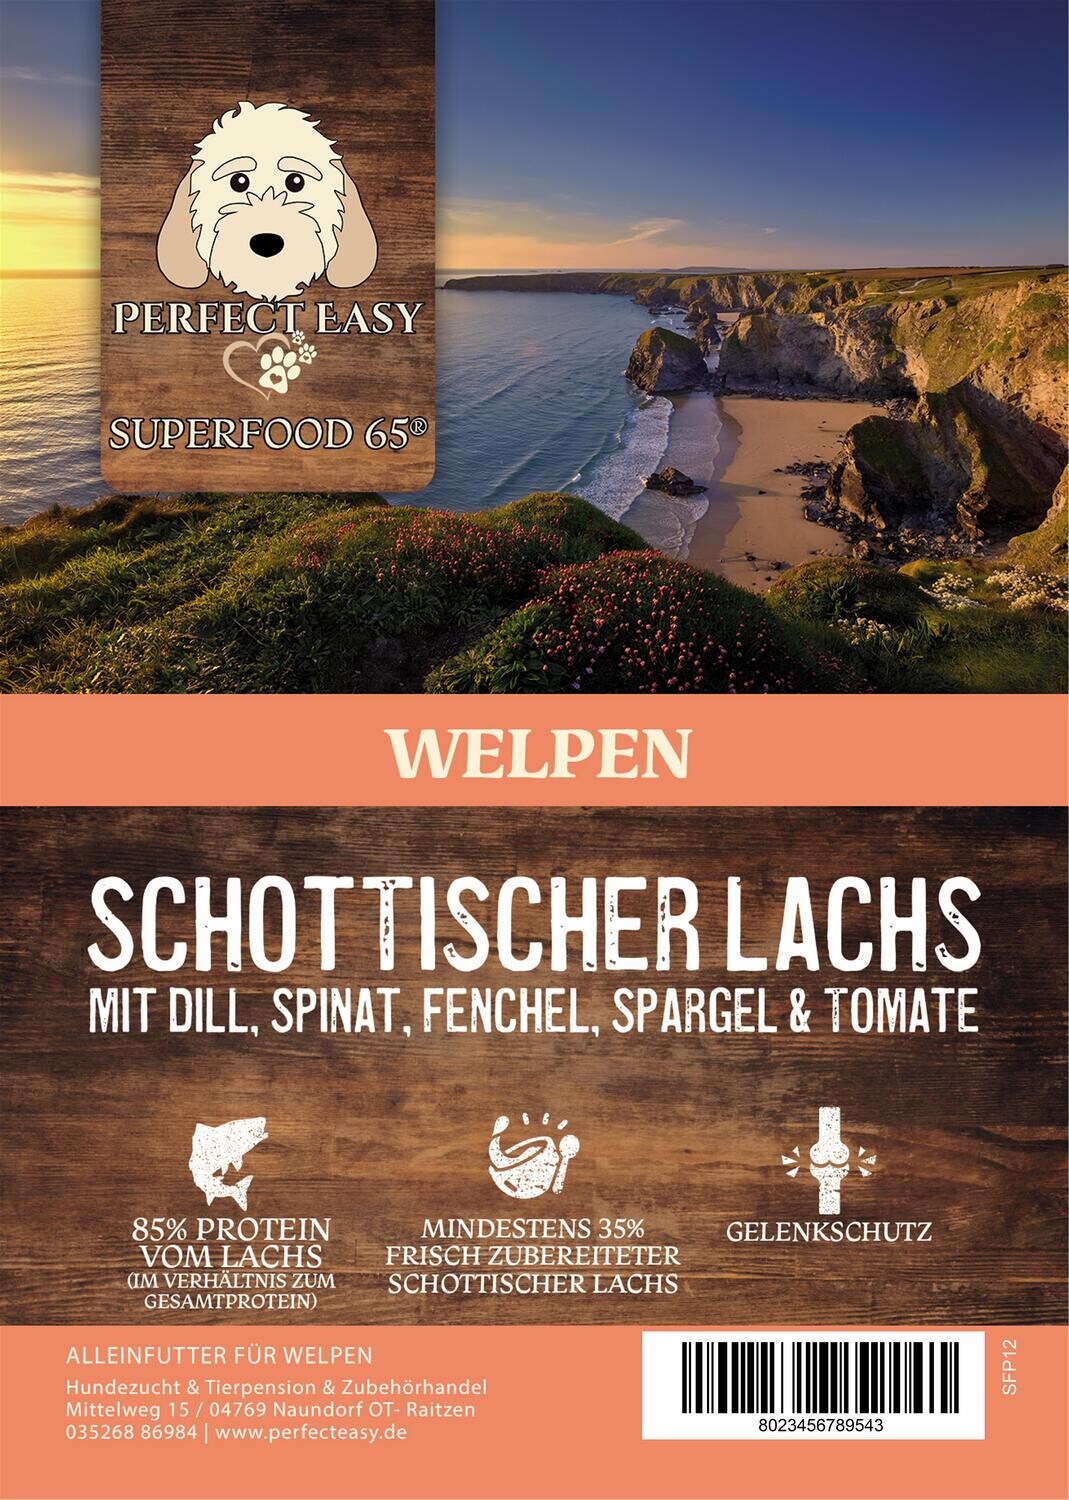 Superfood 65 Welpen Schottischer Lachs mit Dill, Spinat, Fenchel, Spargel &amp; Tomate, Iinhalt: 2kg